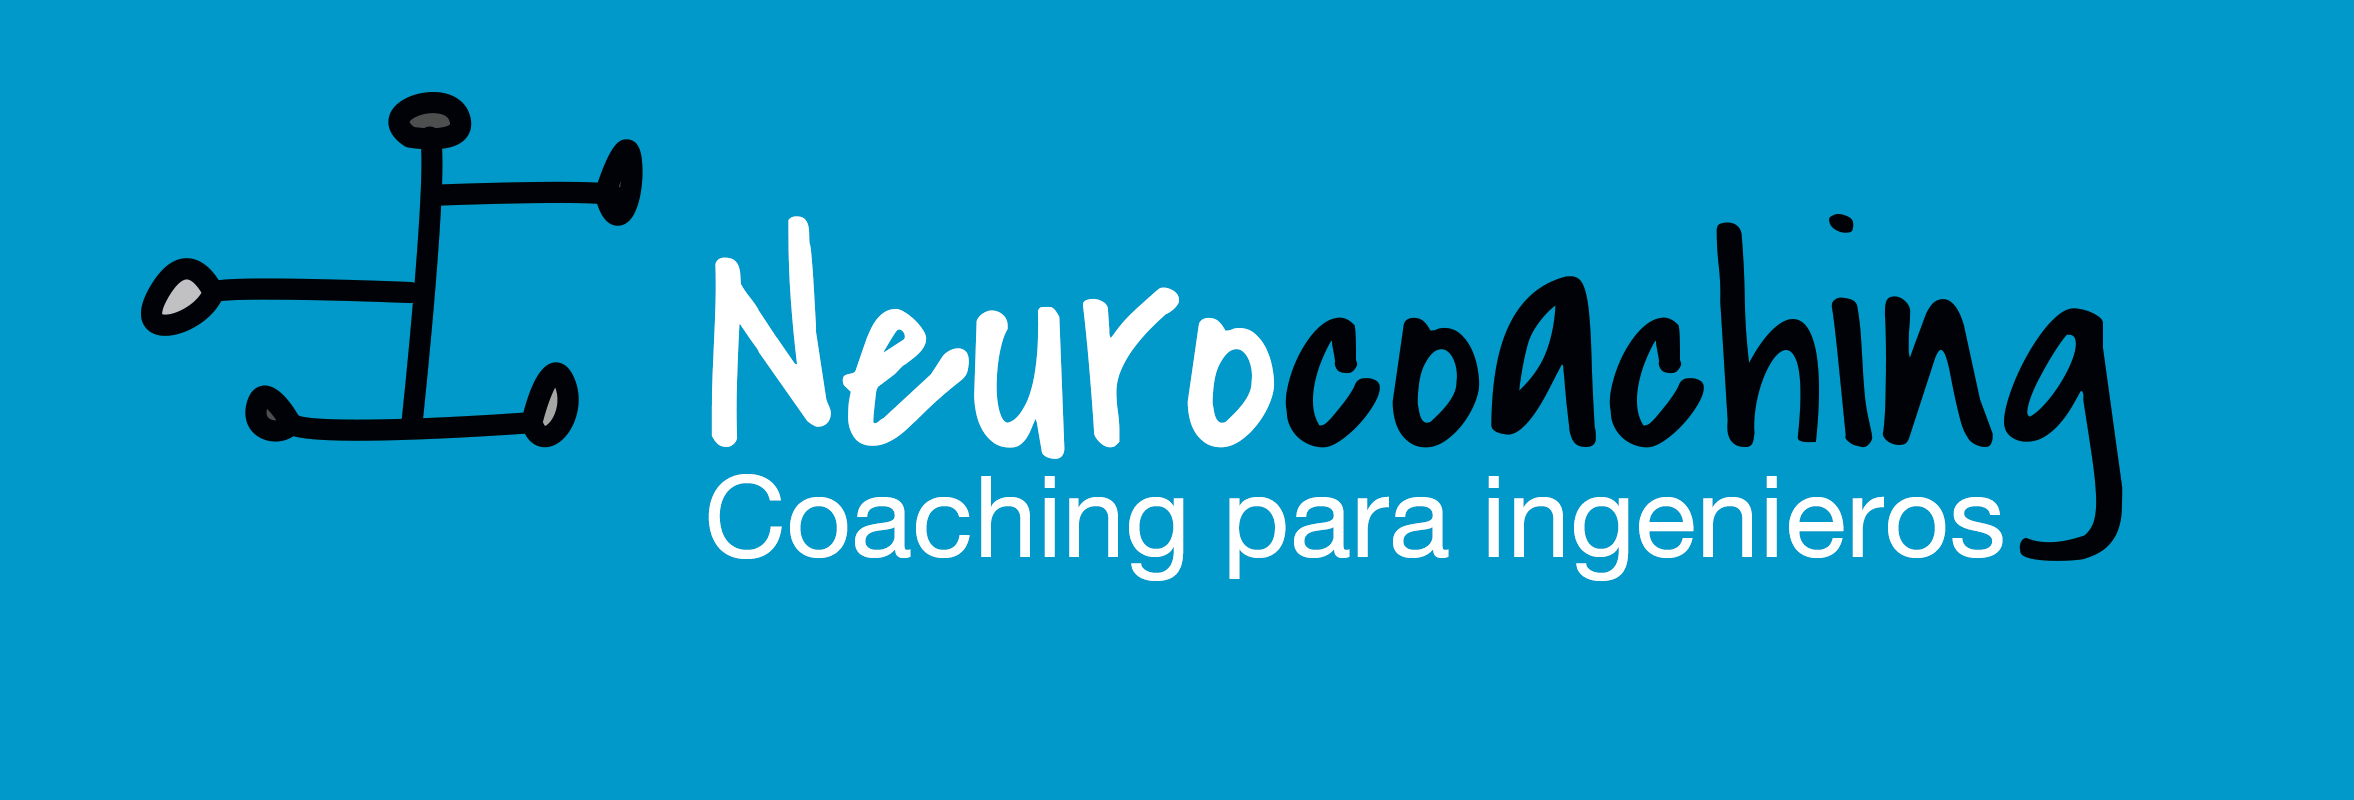 Neurocoaching. Coaching para Ingenieros